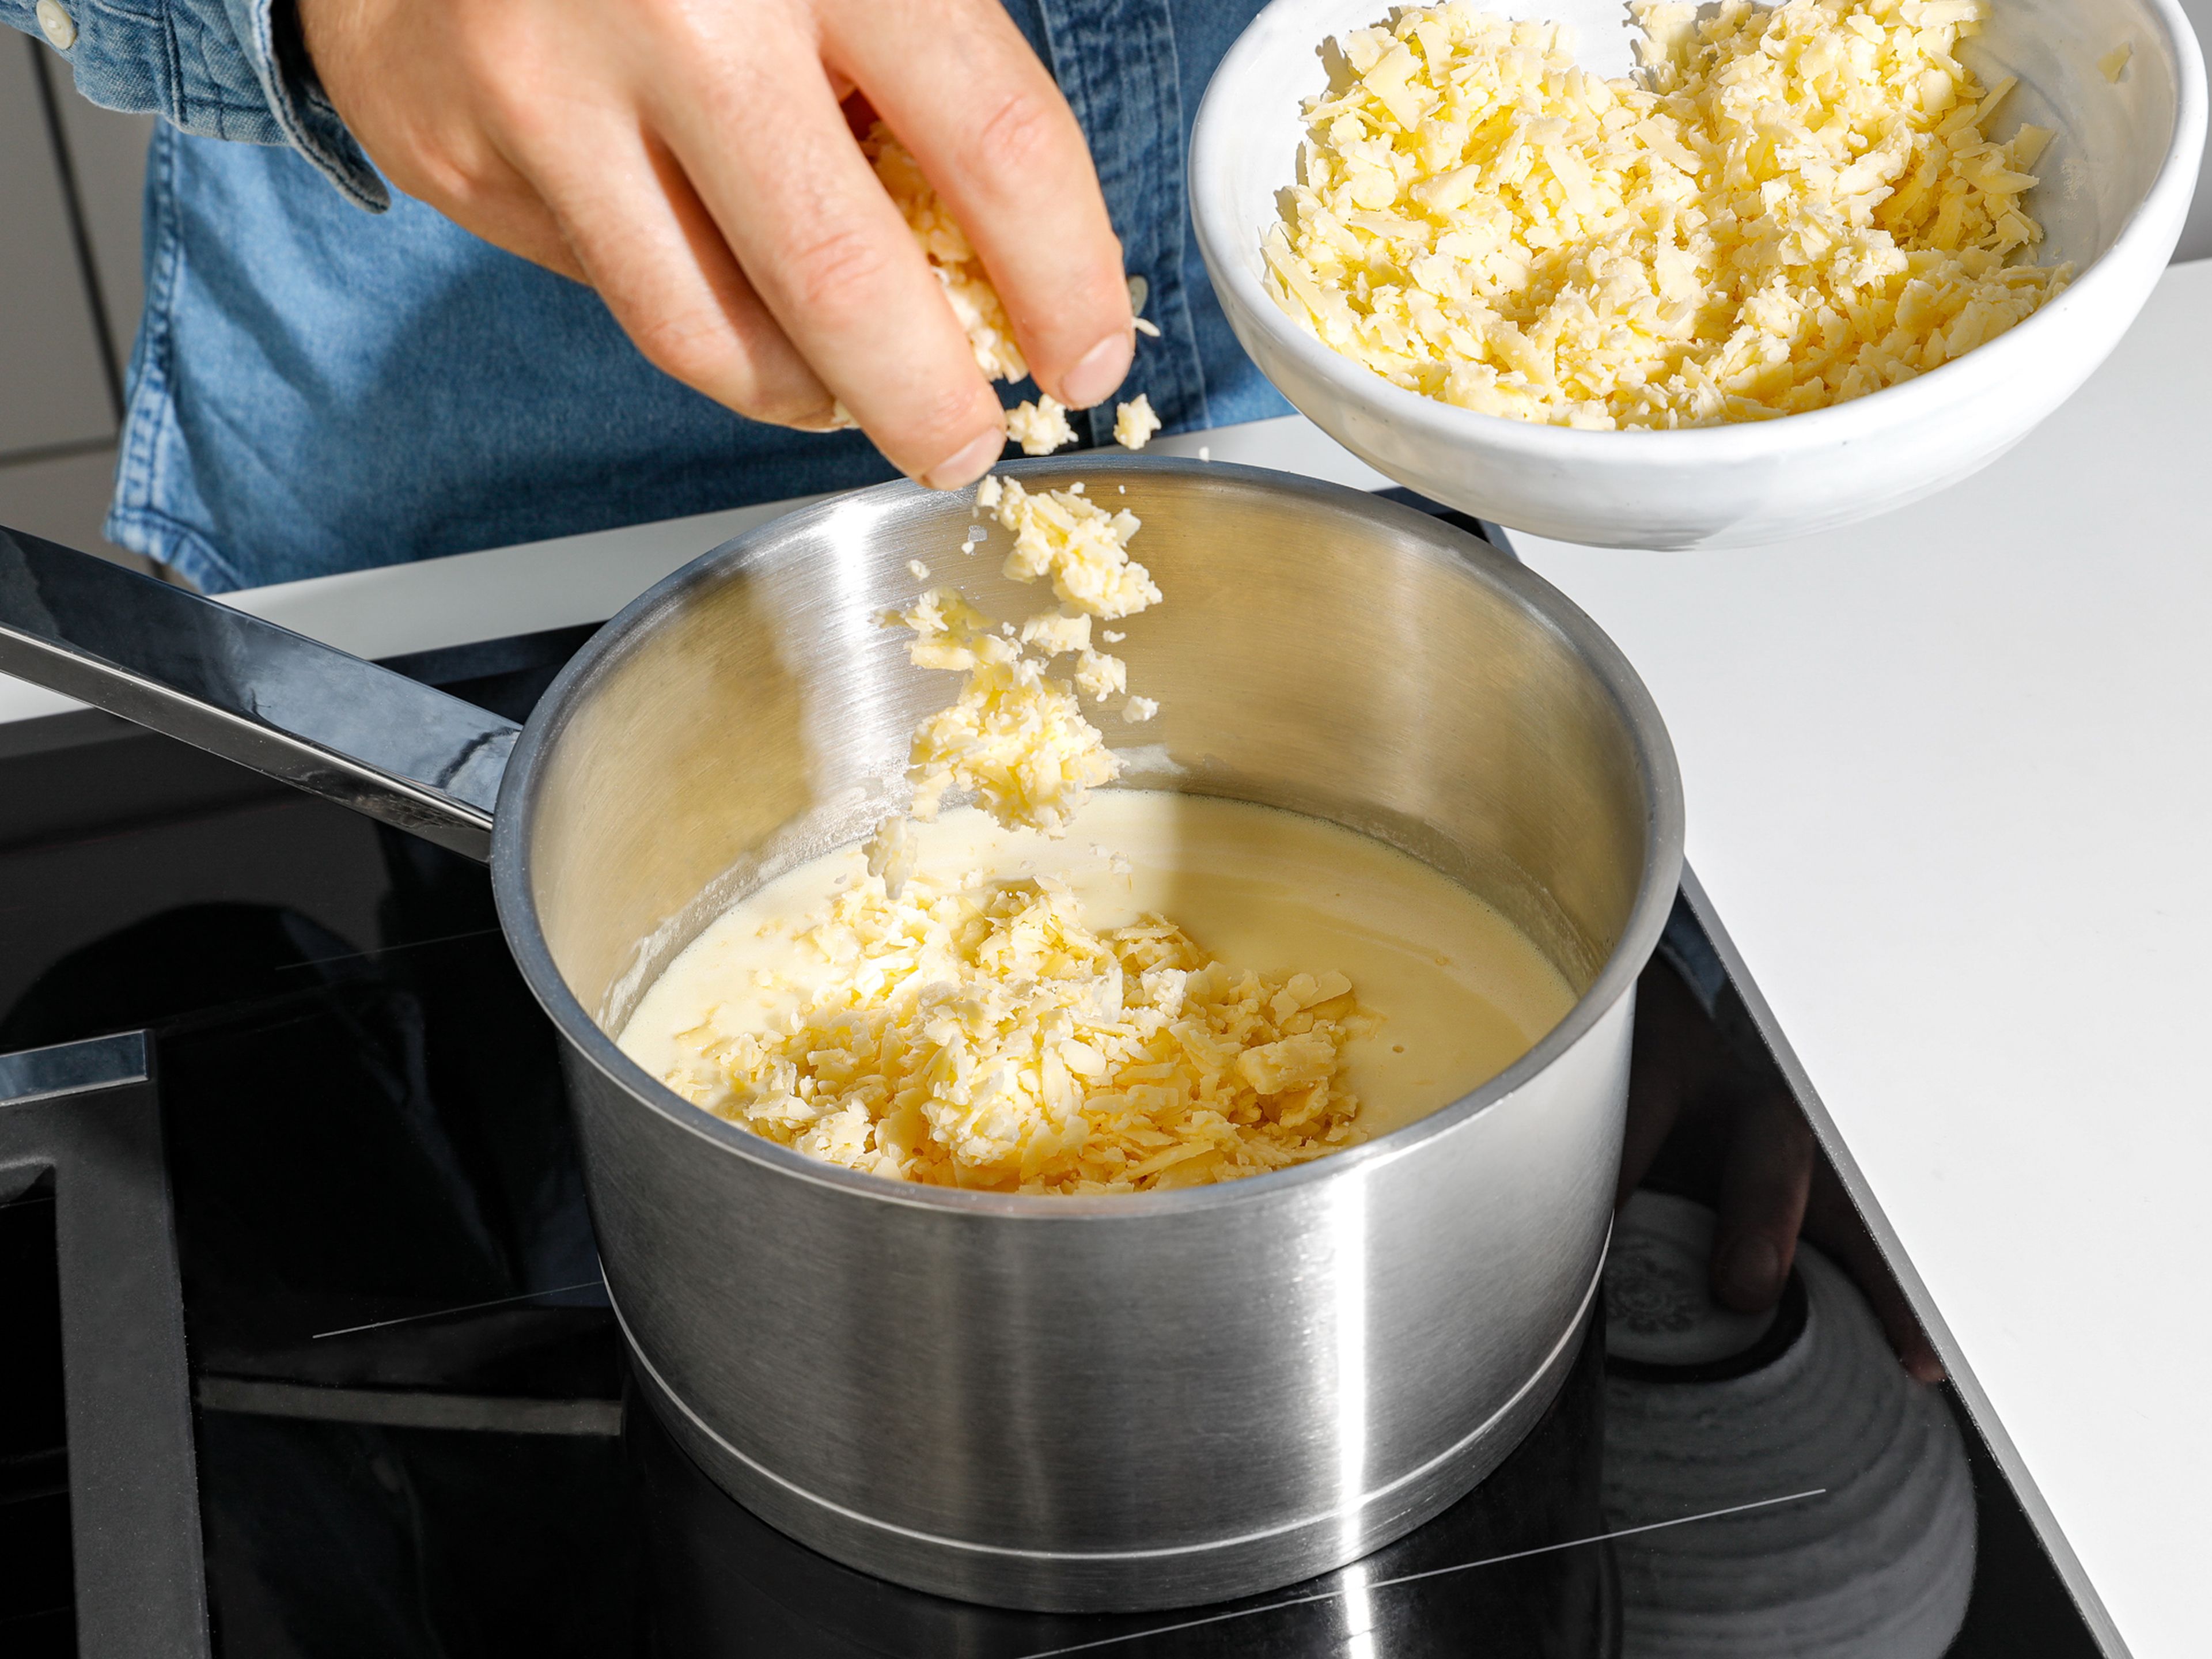 In der Zwischenzeit den Bier-Käse-Dip zubereiten. Butter in einem Stieltopf schmelzen und Mehl einrühren. Unter Rühren Milch und Flensburger Pilsener dazugeben und verrühren, bis eine glatte Mischung entsteht. Dijonsenf und geriebenen Cheddarkäse einrühren und den Dip mit Salz und Pfeffer abschmecken. Warmen Käsedip zu den Brezel-Bites servieren. Guten Appetit!